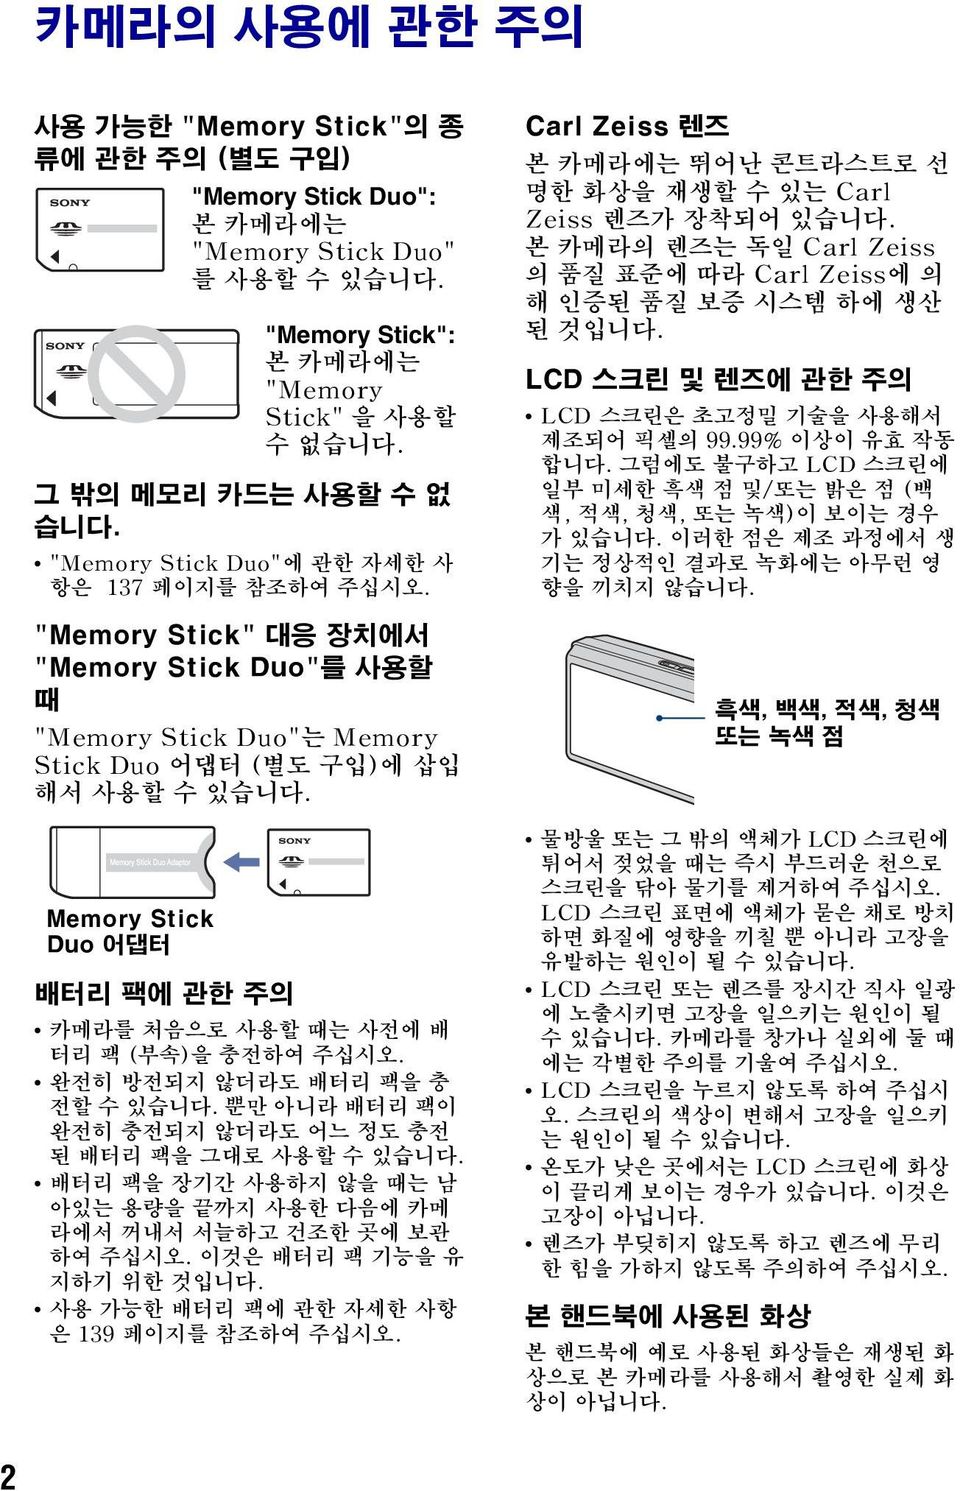 Memory Stick Duo 어댑터 배터리 팩에 관한 주의 카메라를 처음으로 사용할 때는 사전에 배 터리 팩 (부속)을 충전하여 주십시오. 완전히 방전되지 않더라도 배터리 팩을 충 전할 수 있습니다. 뿐만 아니라 배터리 팩이 완전히 충전되지 않더라도 어느 정도 충전 된 배터리 팩을 그대로 사용할 수 있습니다.